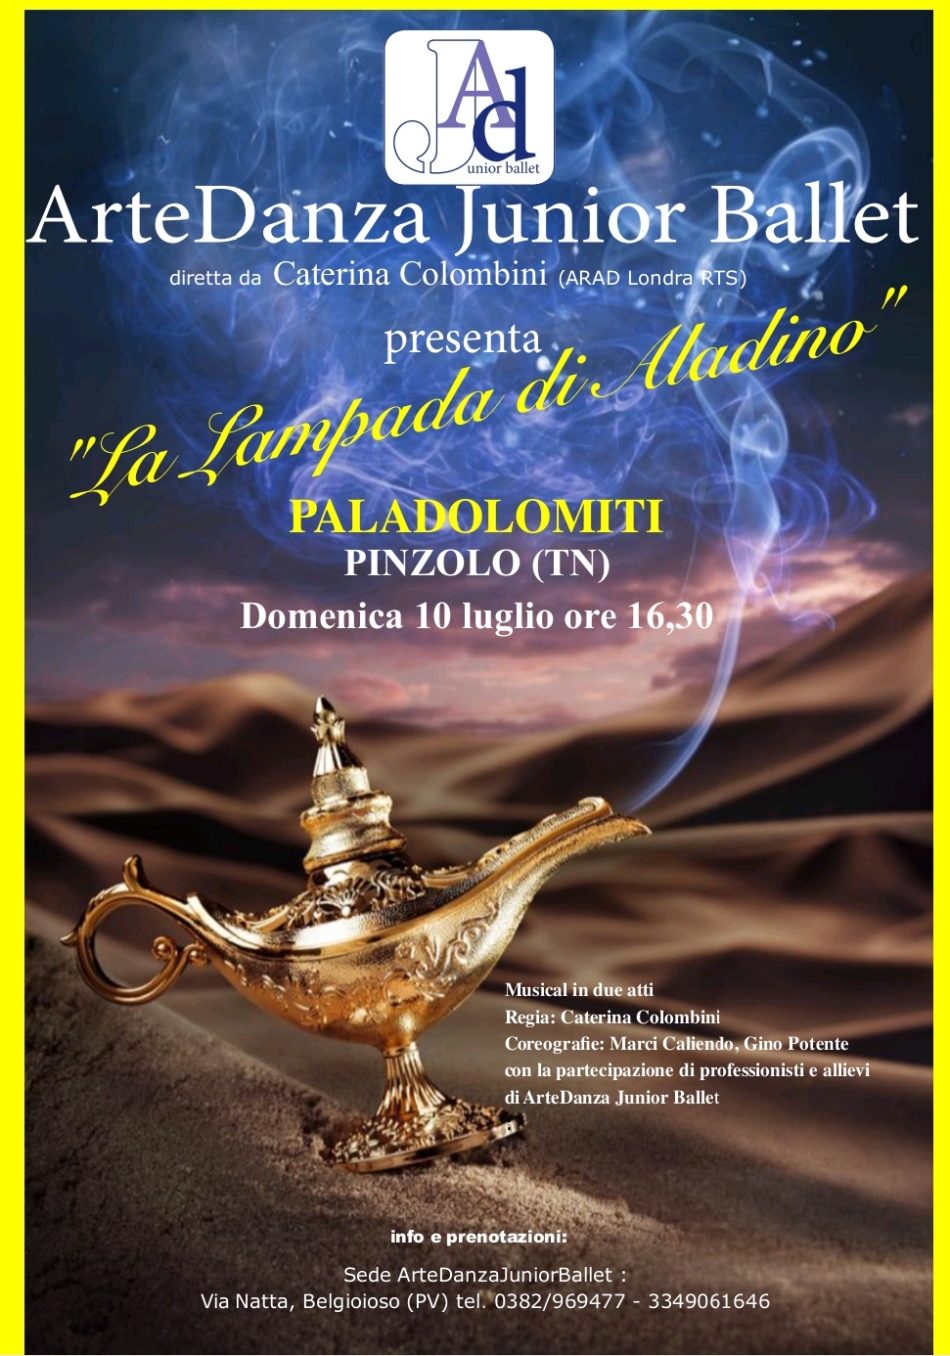 10 luglio, Paladolomiti Pinzolo: Spettacolo di danza “La lampada di Aladino” alle 16.30